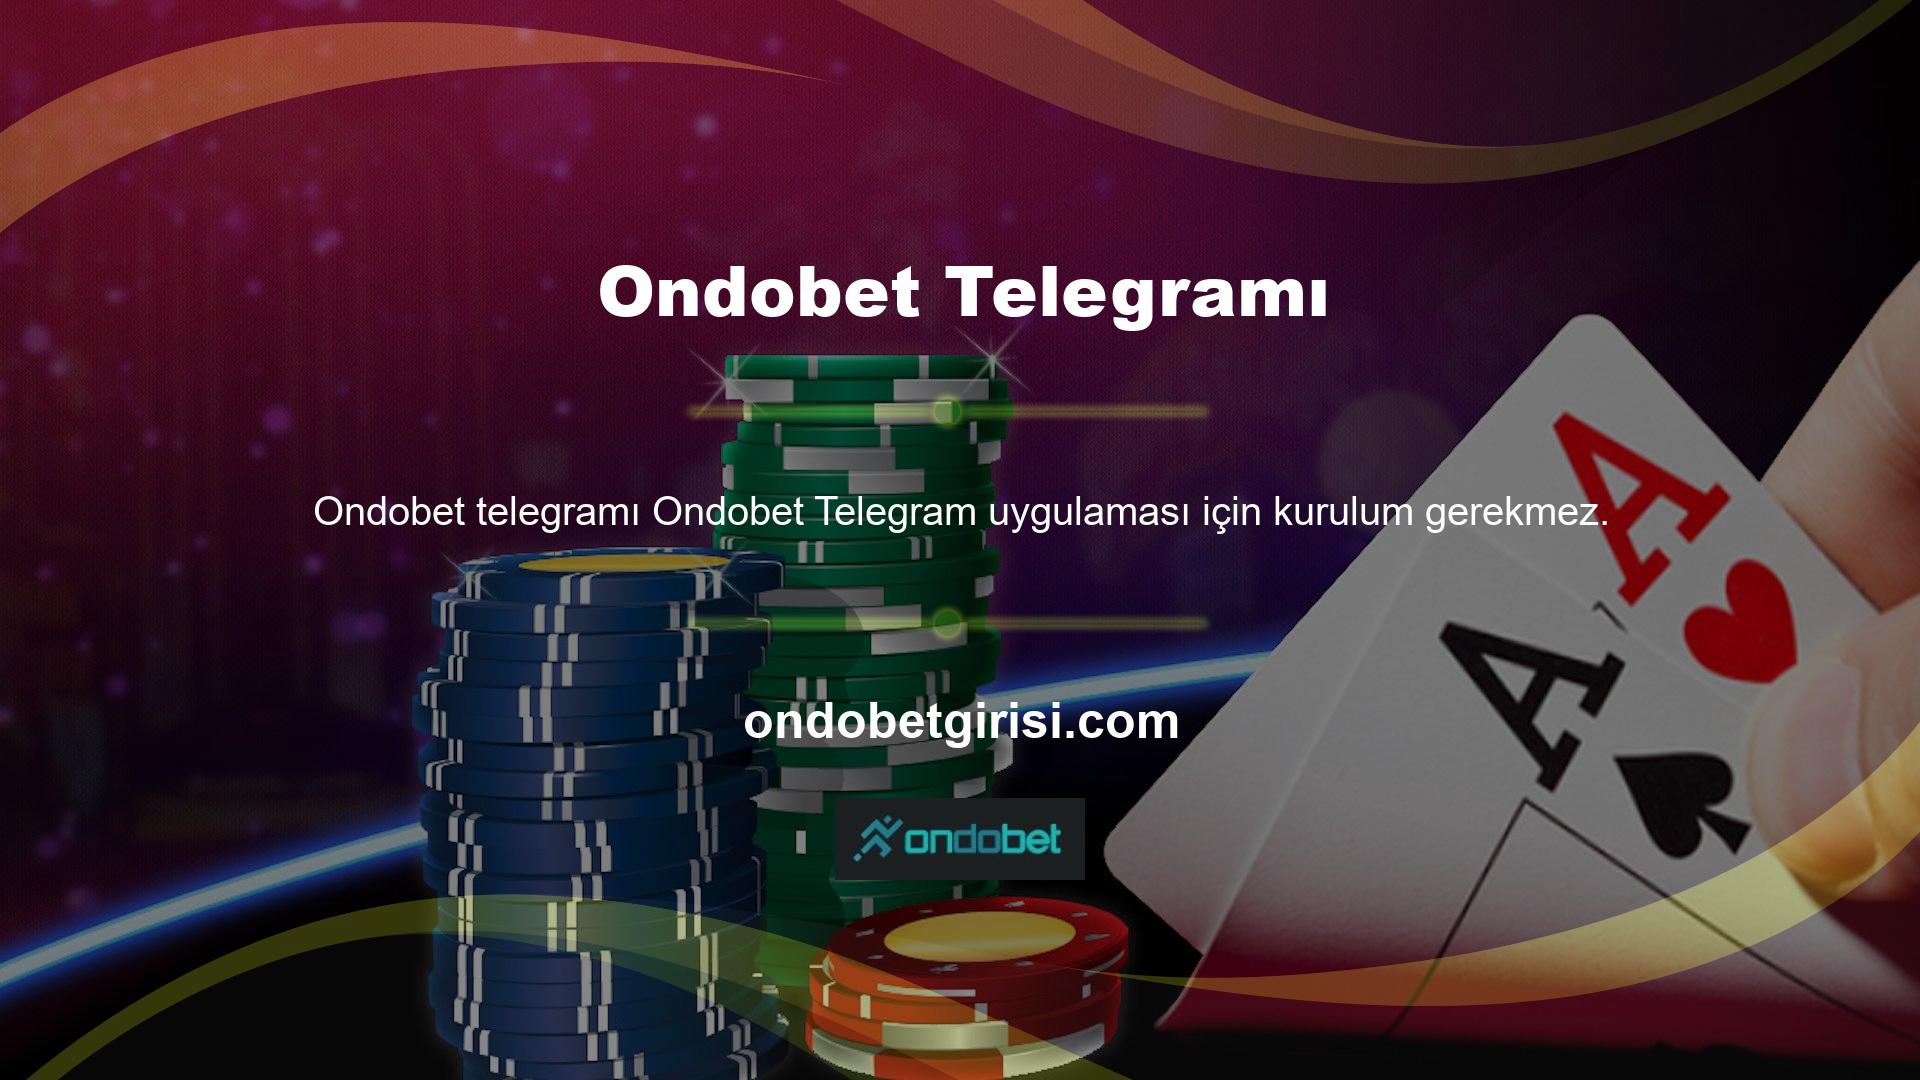 Ondobet telgraf uygulaması genellikle akıllı telefona entegredir ve kurulumunu gerektirir